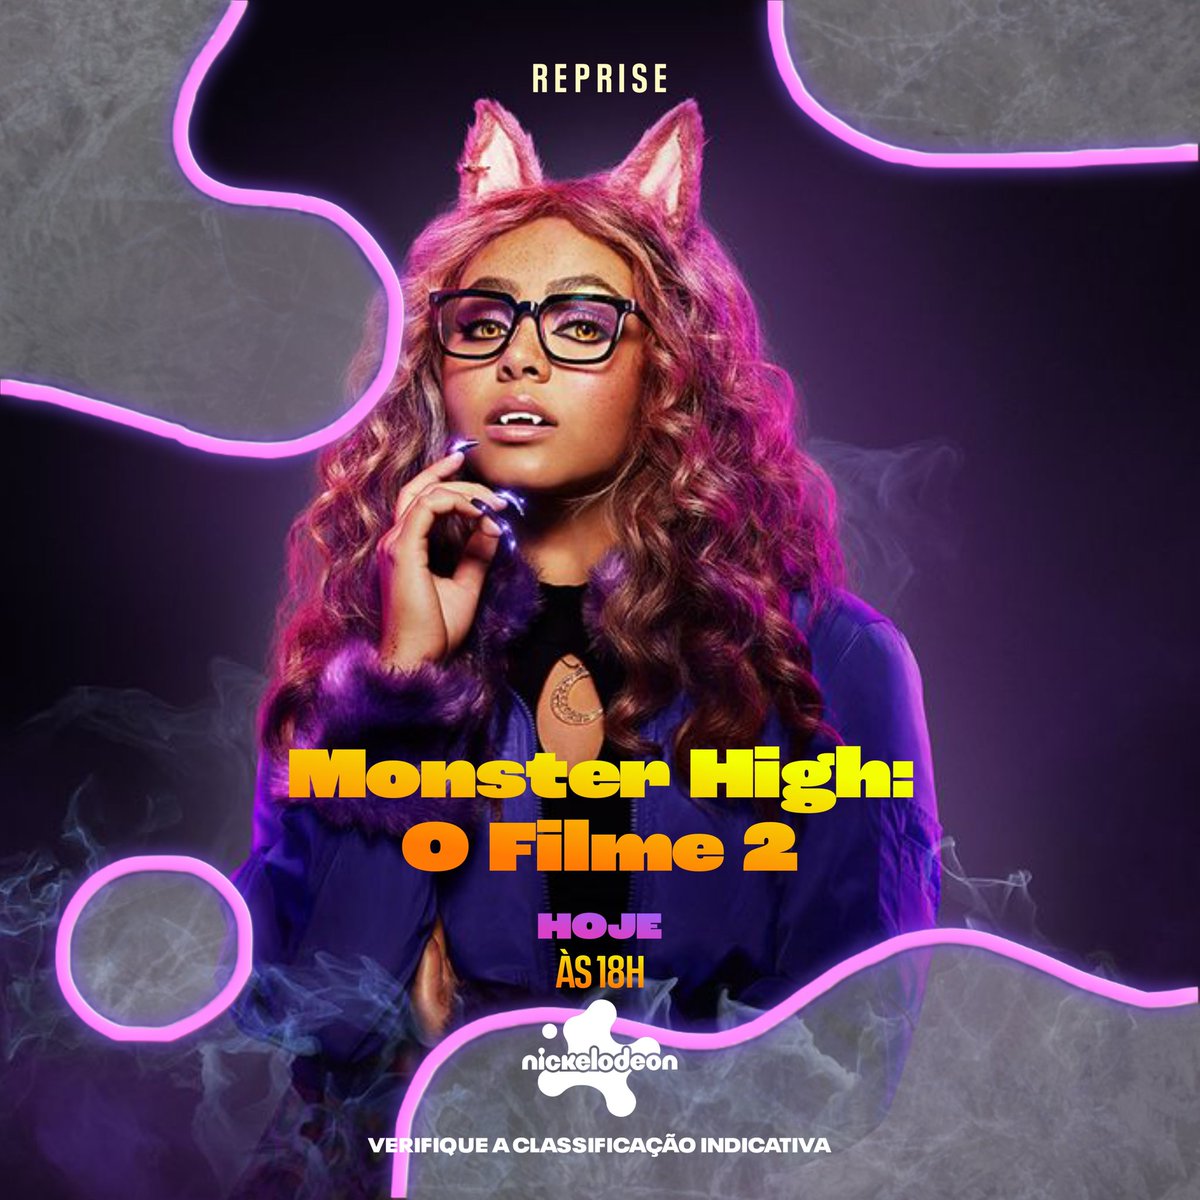 👾🎬 Atenção, fãs de Monster High! Hoje, às 18h, reprise de 'Monster High 2' na Nickelodeon! 🎉 Não percam nossos monstros favoritos em novos desafios sobrenaturais. Também disponível no @ParamountPlusBr! 🧛‍♀️🧟‍♂️ #MonsterHigh2 #Nickelodeon #ParamountPlus